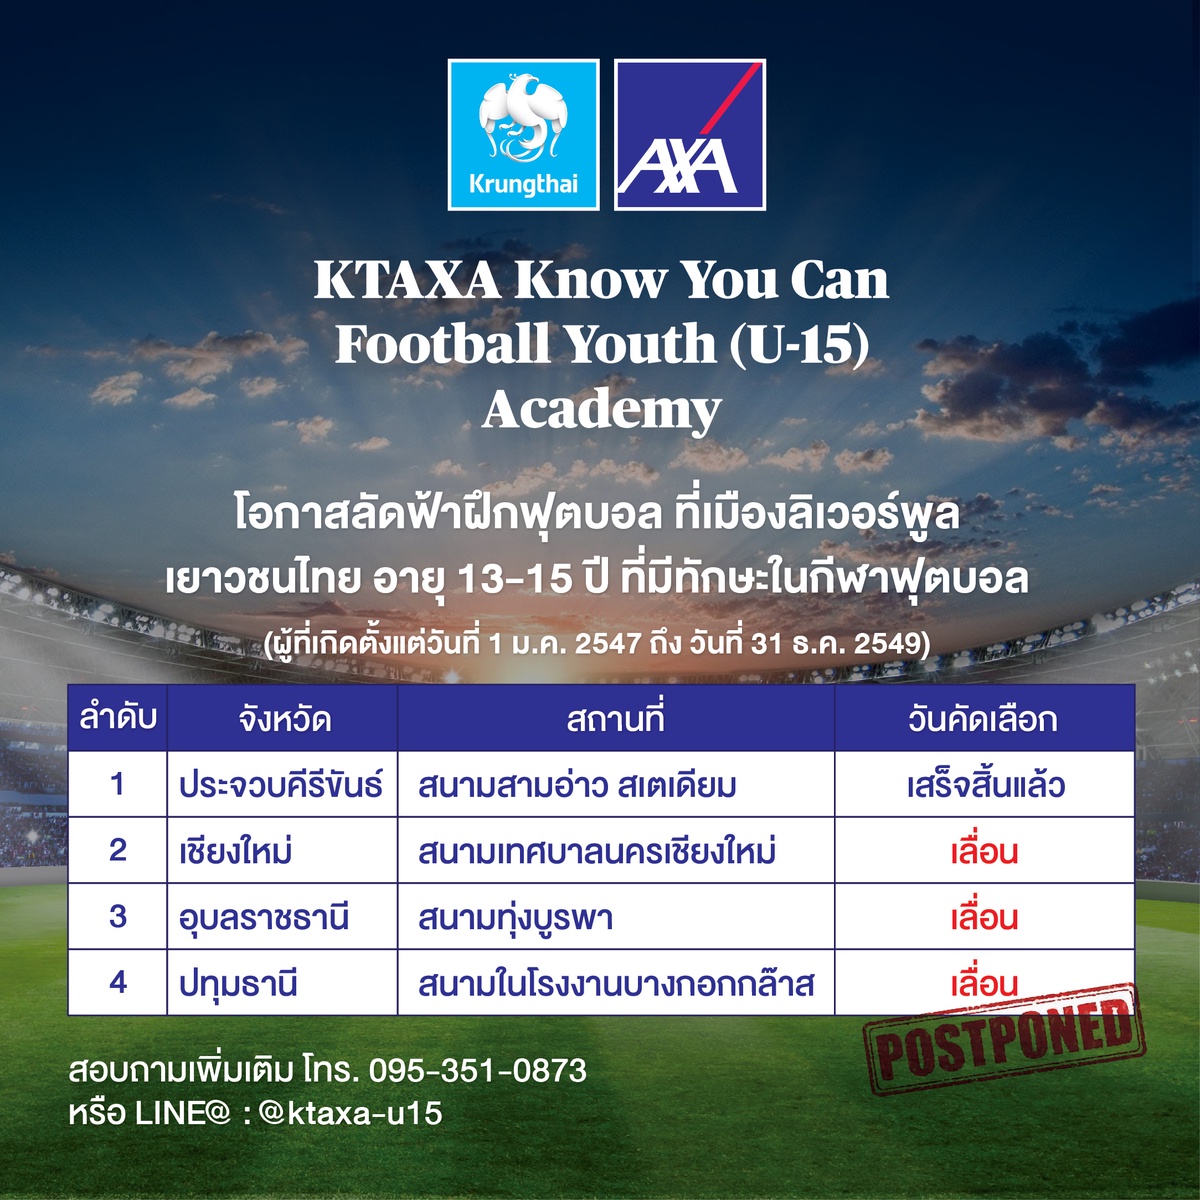 กรุงไทยแอกซ่า ประกันชีวิต เลื่อนจัดกิจกรรม KTAXA Know You Can Football Youth(U-15) Academy